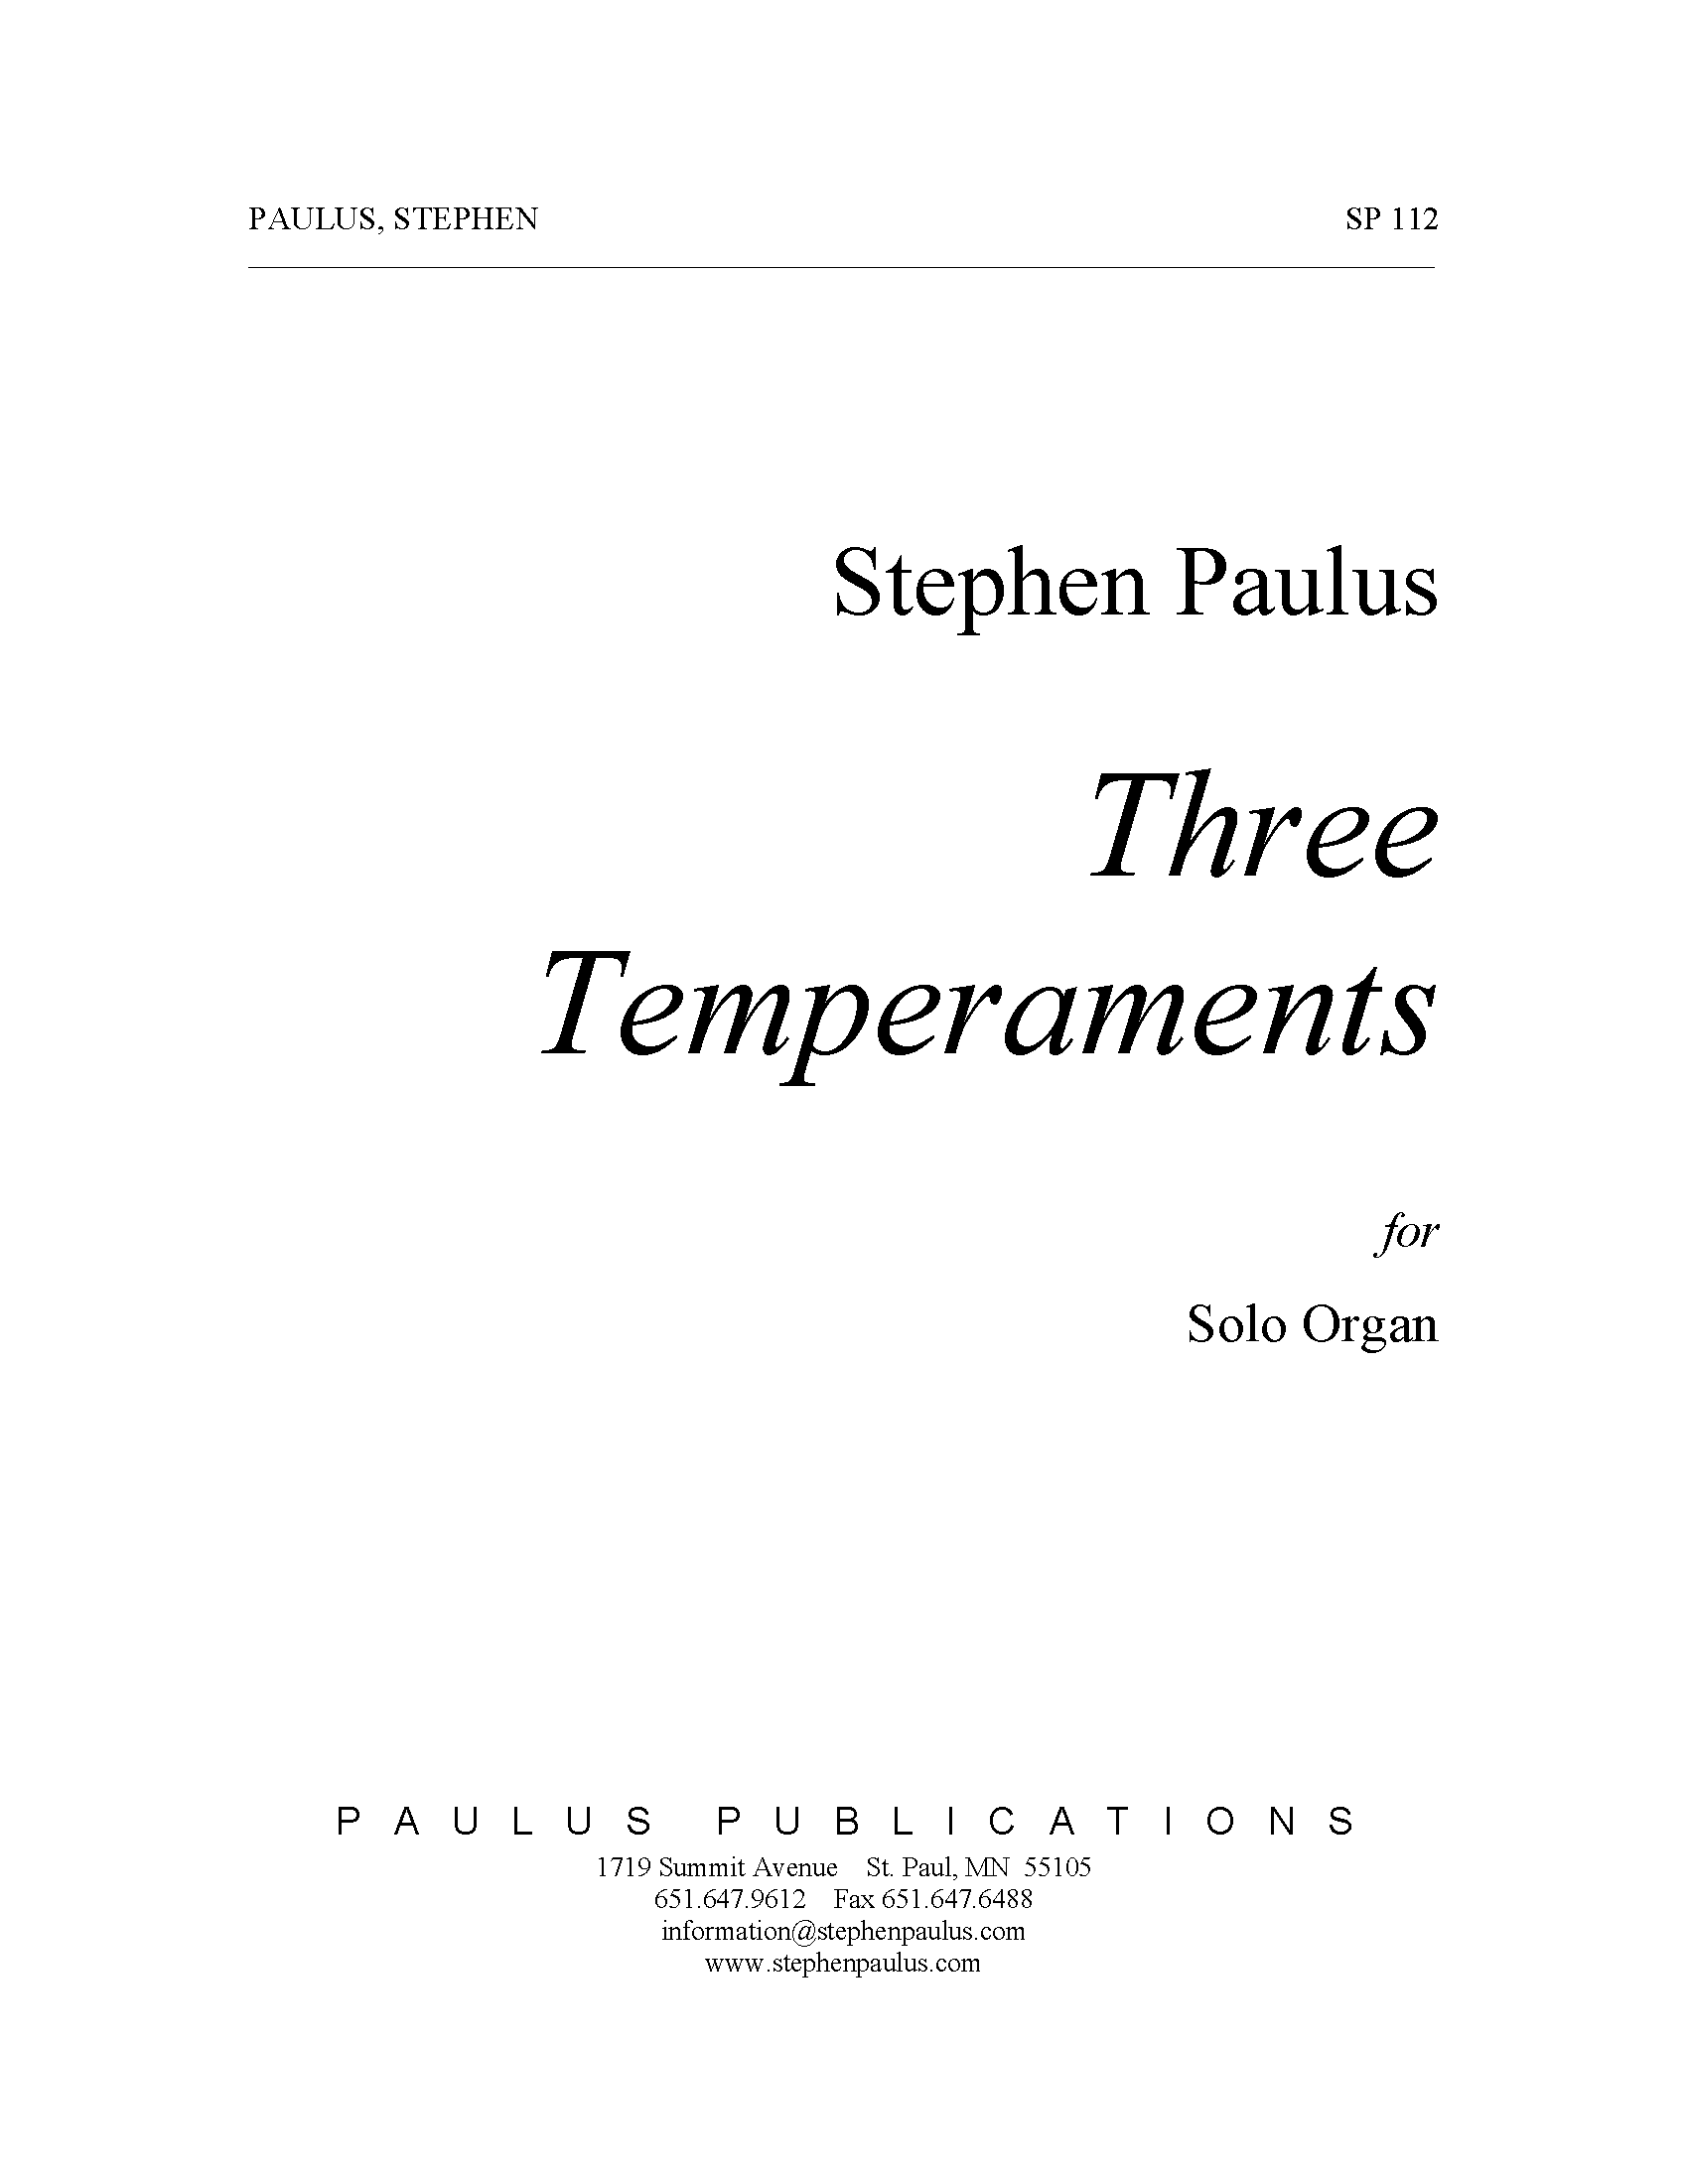 Three Temperaments for Organ